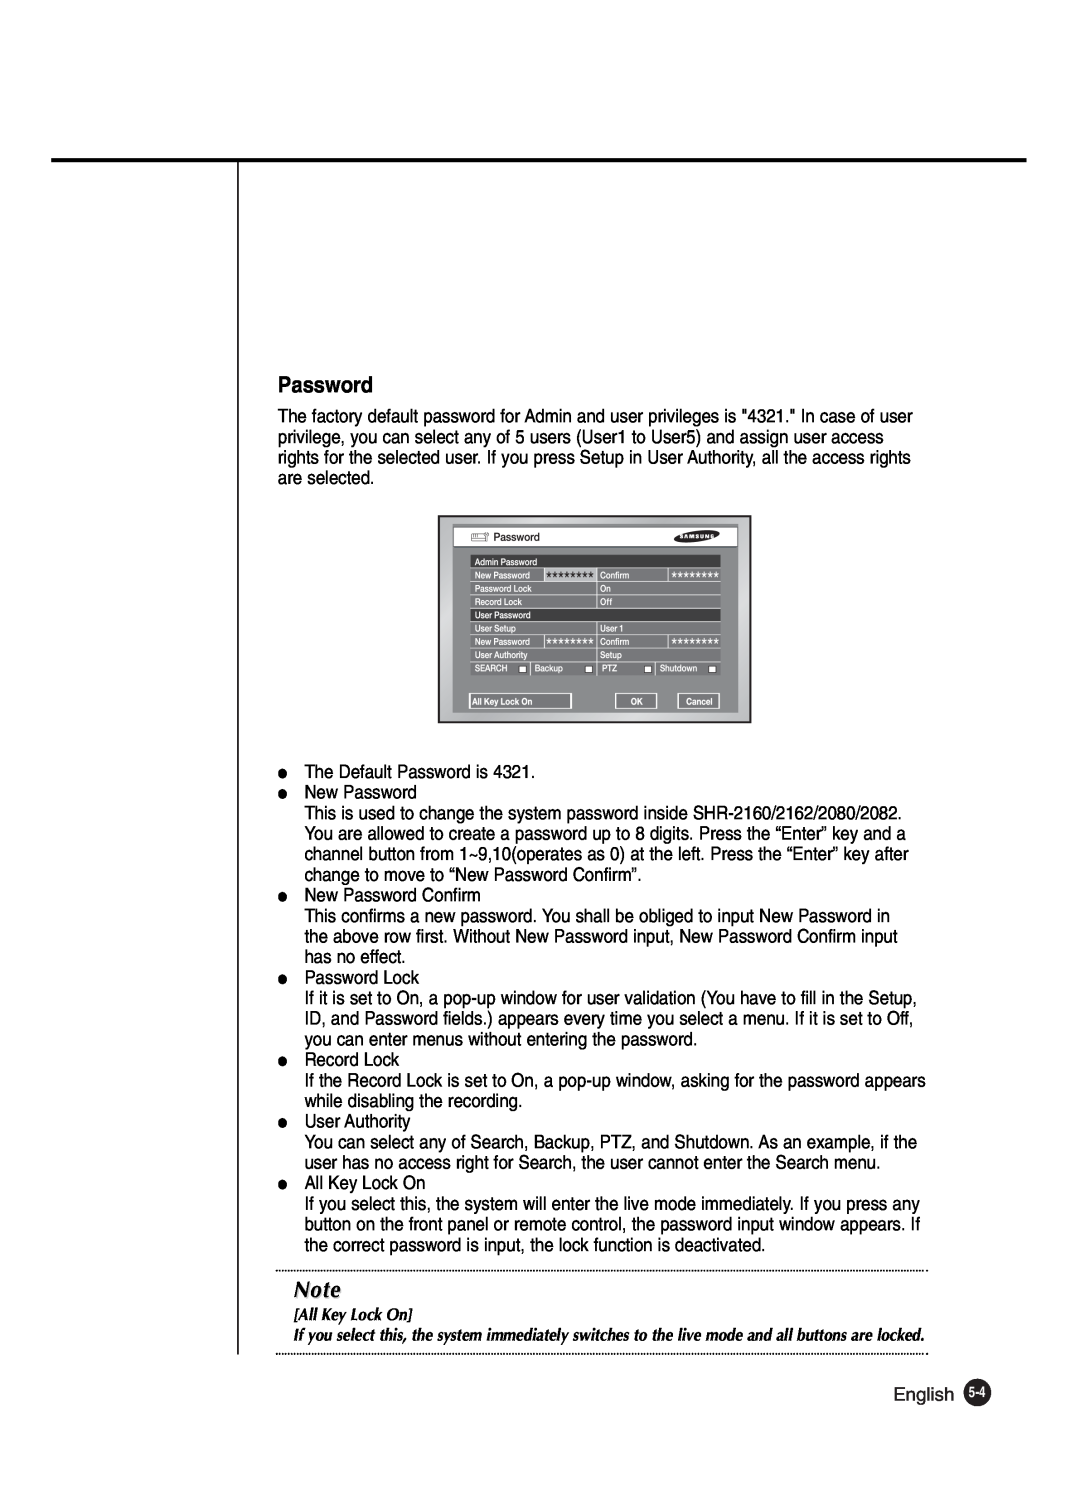 Samsung SHR-2040P250, SHR-2042P250 manual Password, English 